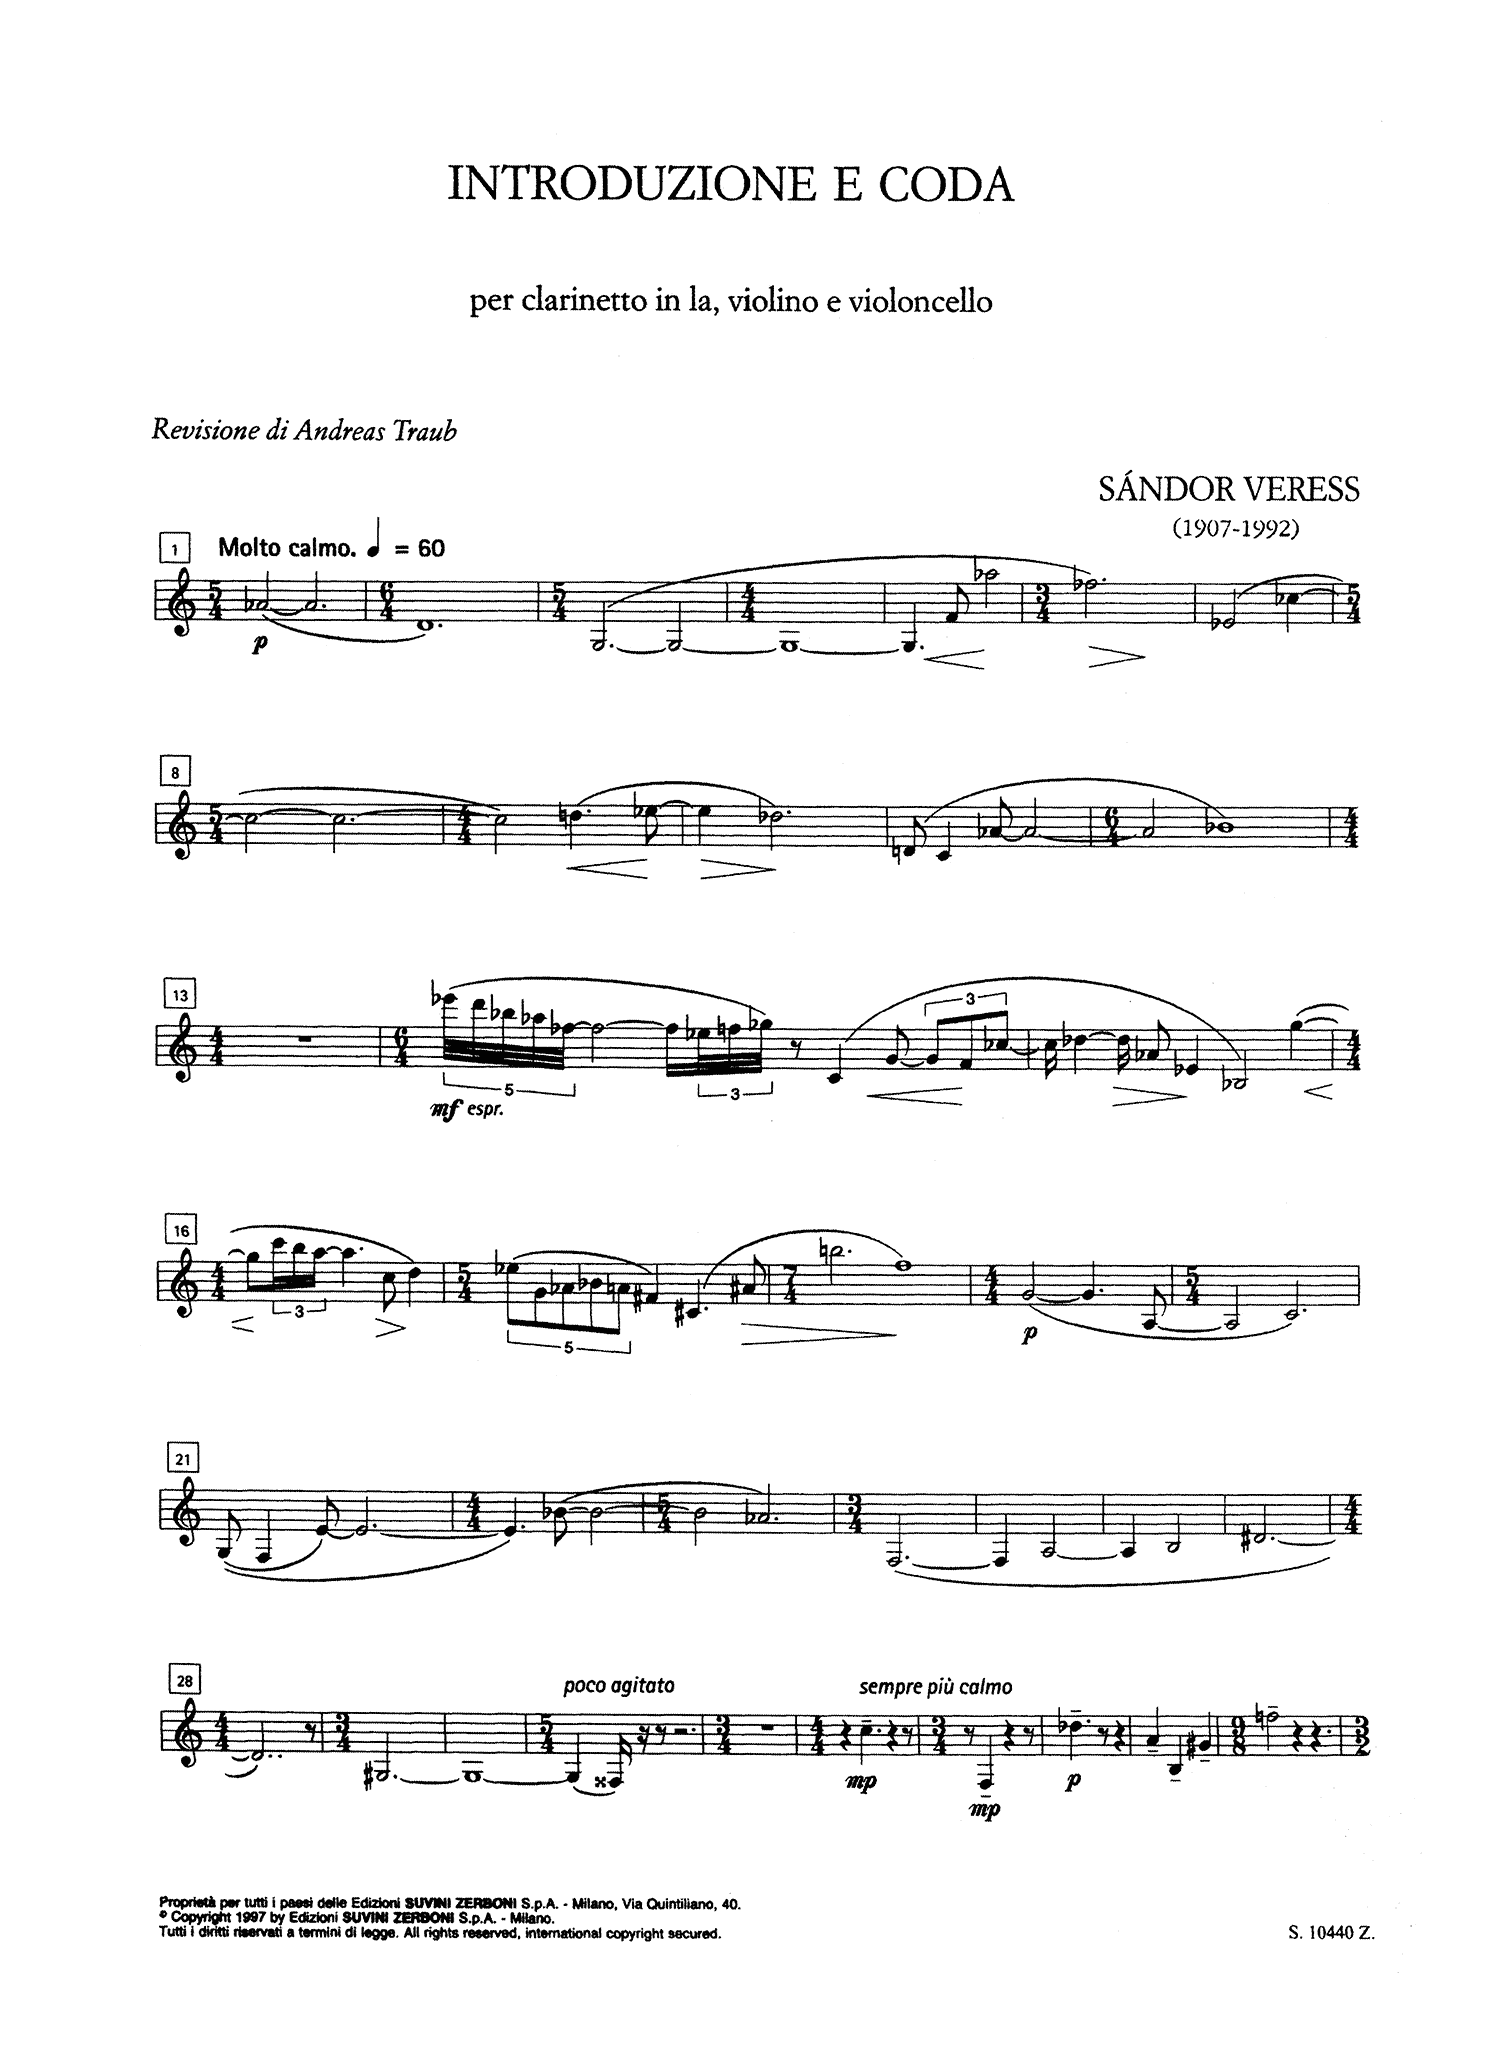 Veress Introduzione e Coda clarinet violin and cello clarinet part